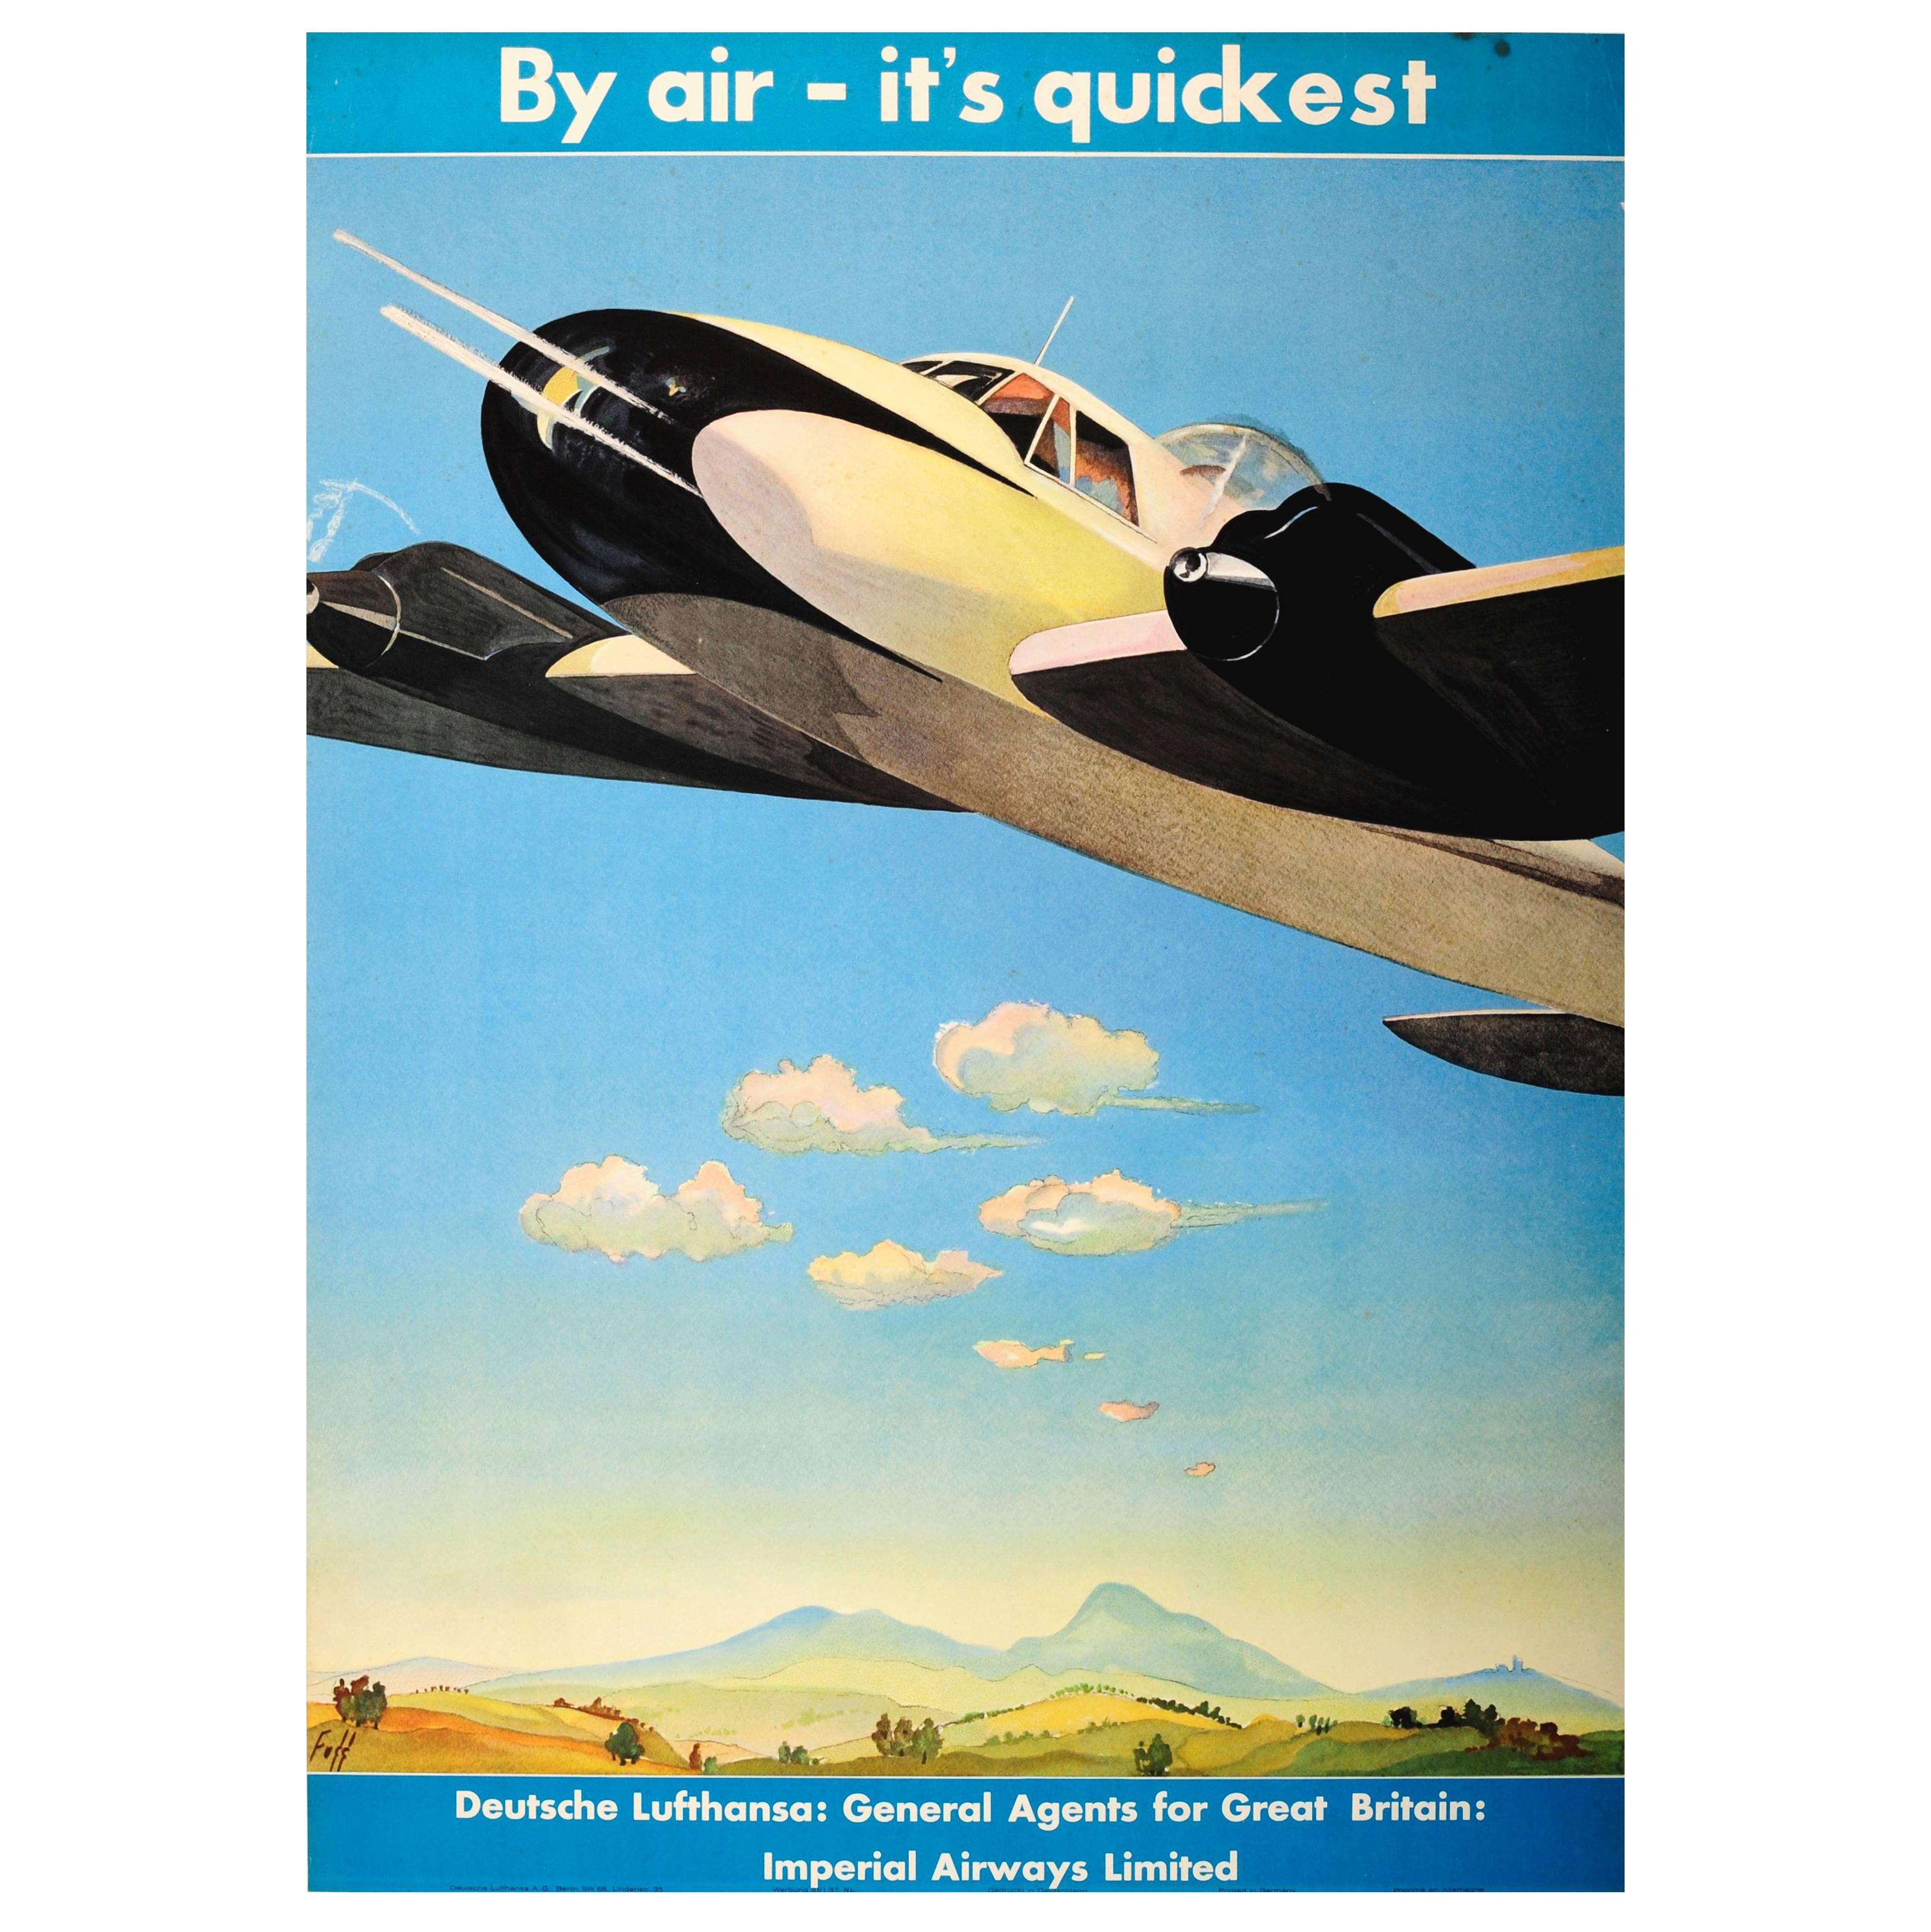 Original Deutsche Lufthansa Travel Advertising Poster - By Air - It's Quickest